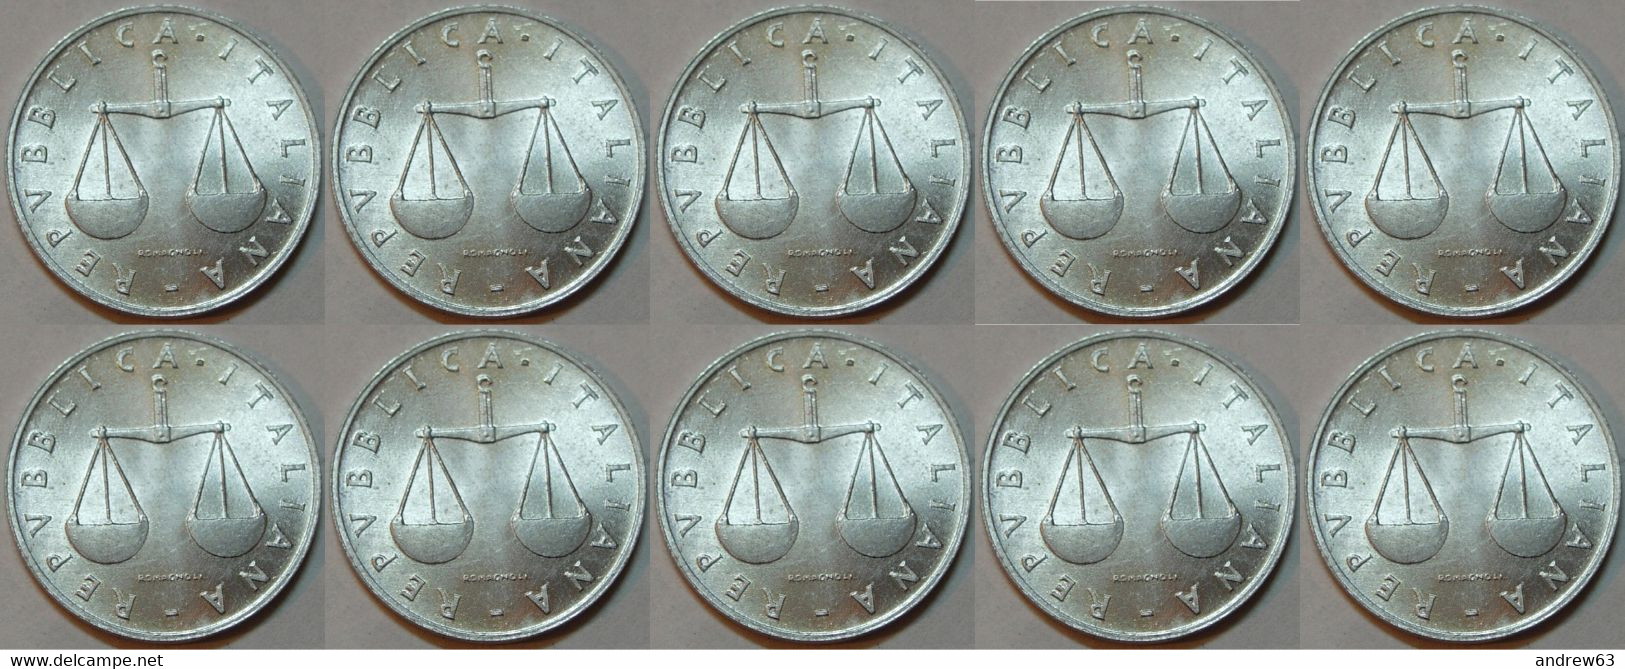 Lire 1 1955 - FDC/Unc Da Rotolino/from Roll 10 Monete/10 Coins - 1 Lira